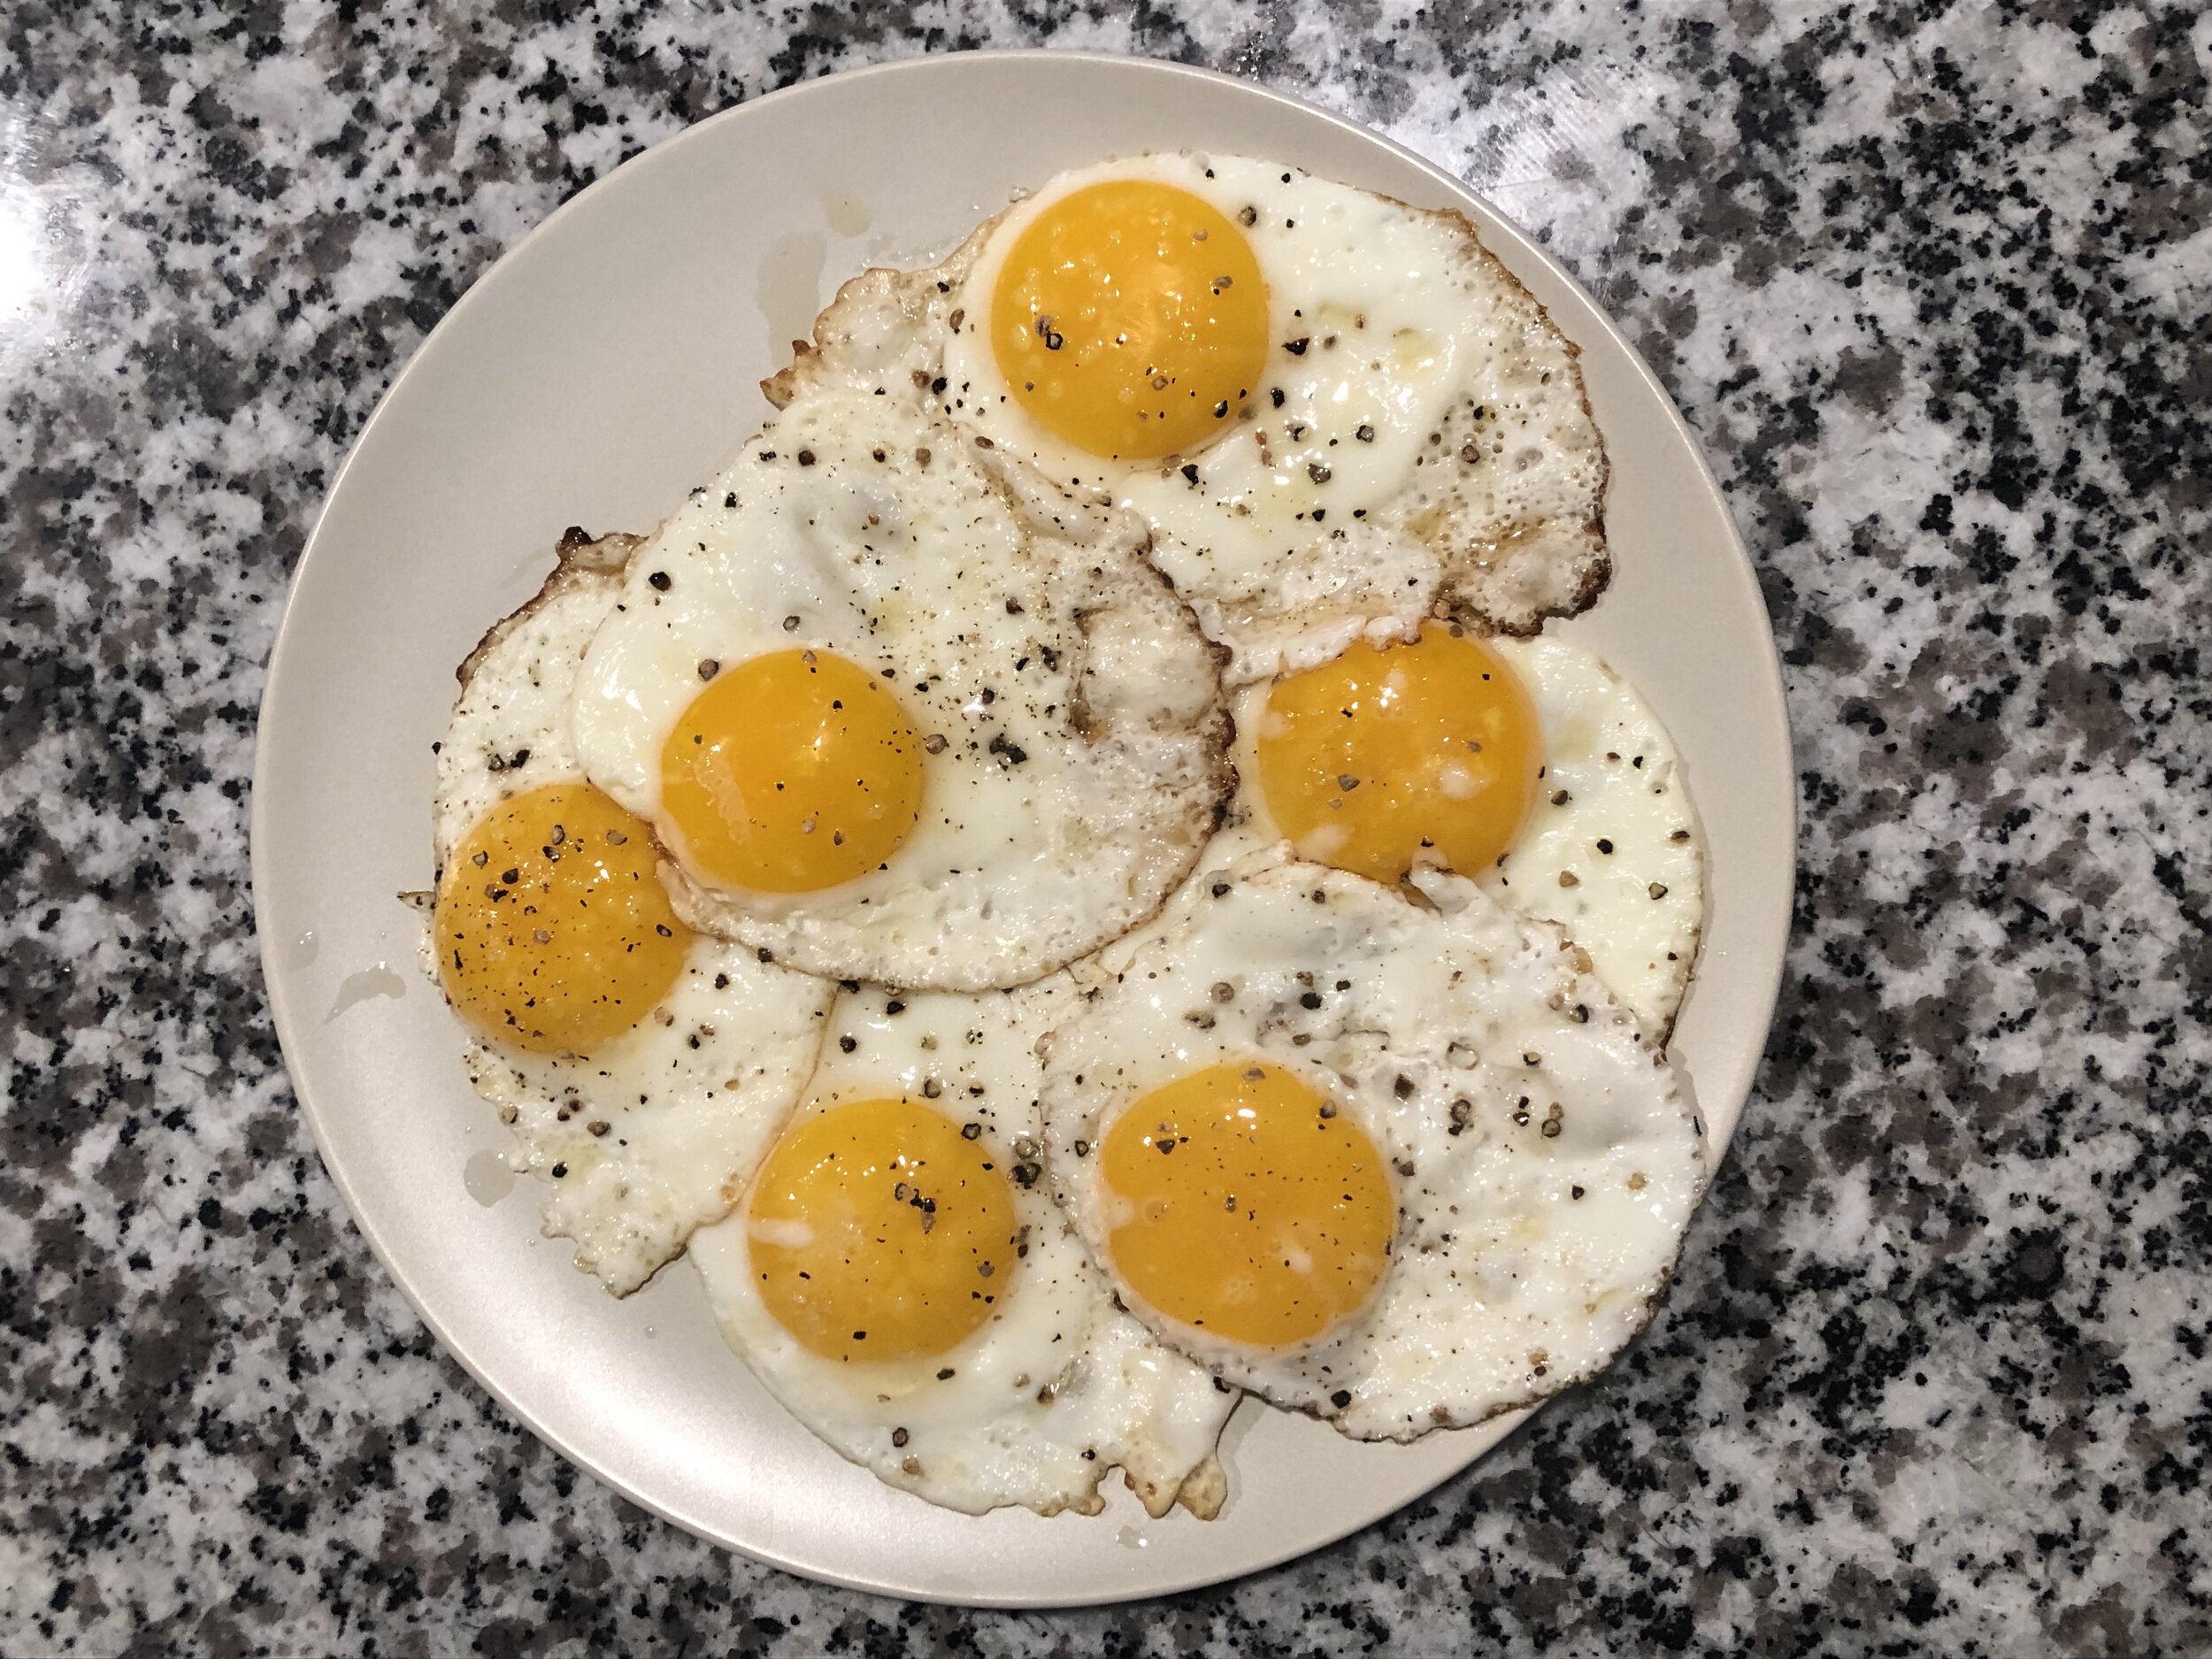 eggs.jpg